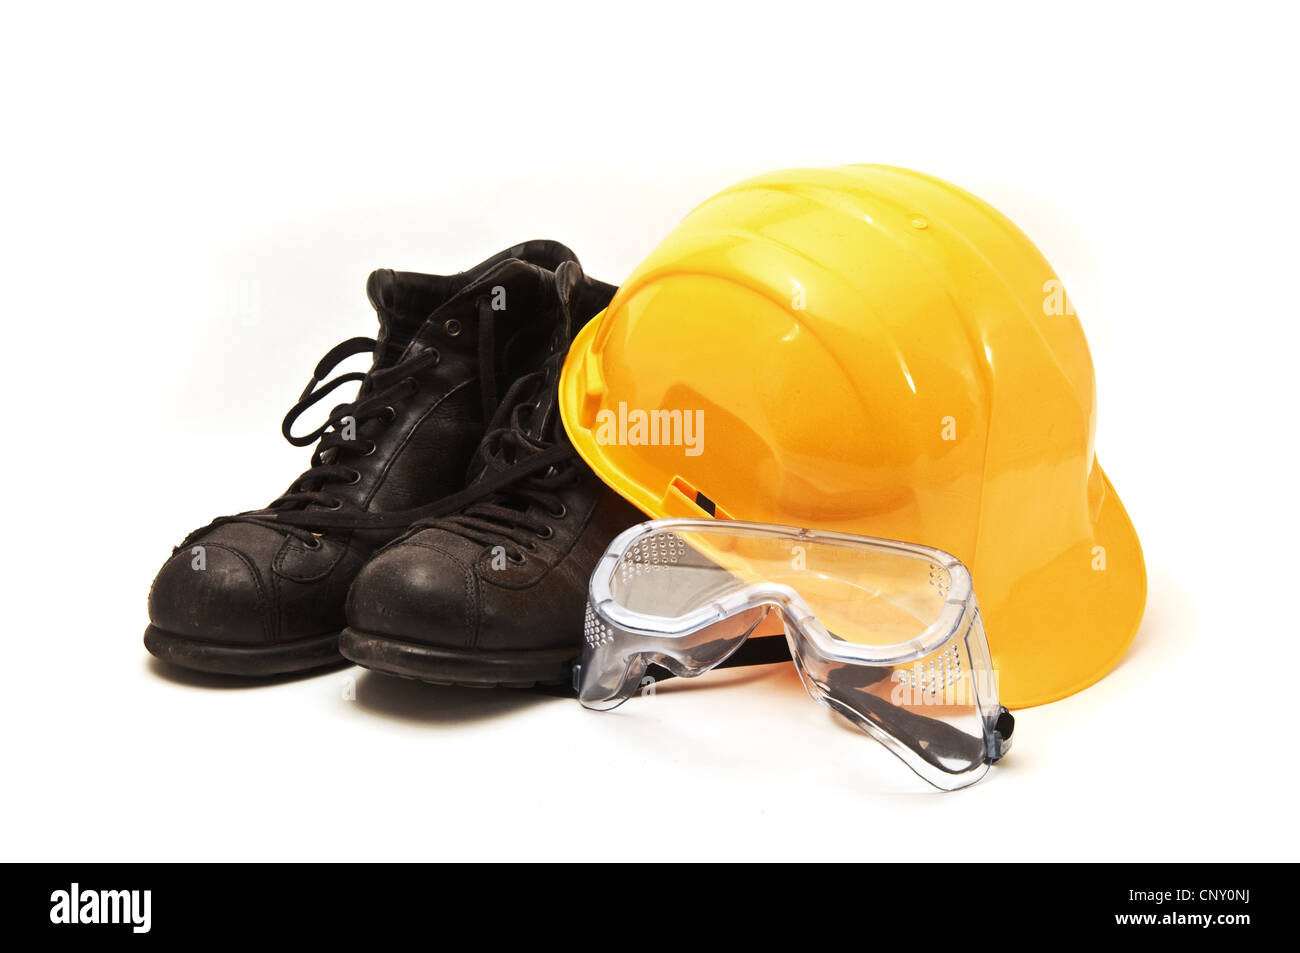 Amarillo sombrero duro, viejas botas de cuero y gafas, equipos en la industria de la construcción. Foto de stock